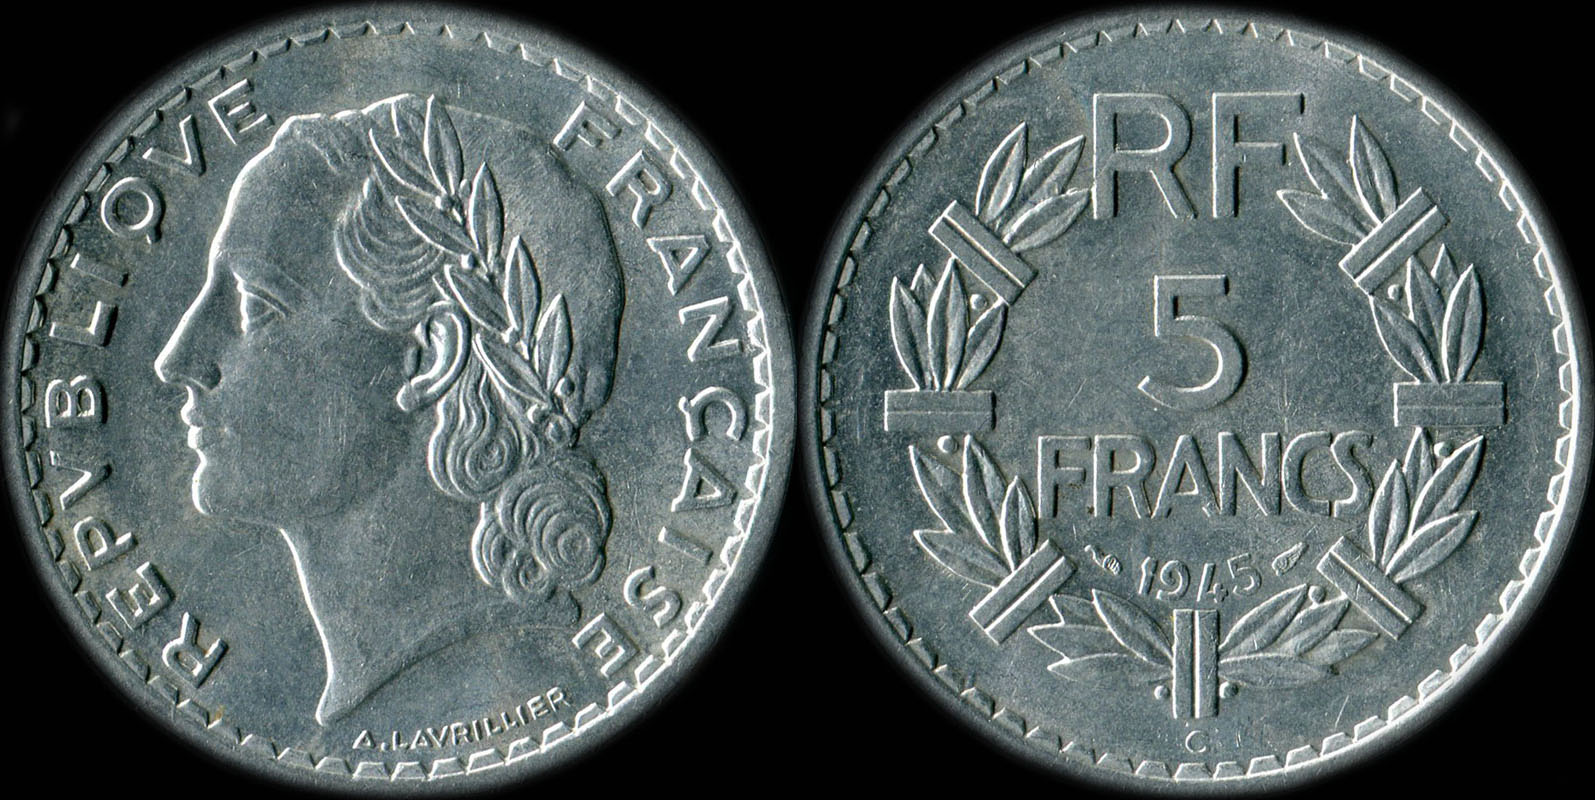 Pice de 5 francs Lavrillier 1945C aluminium